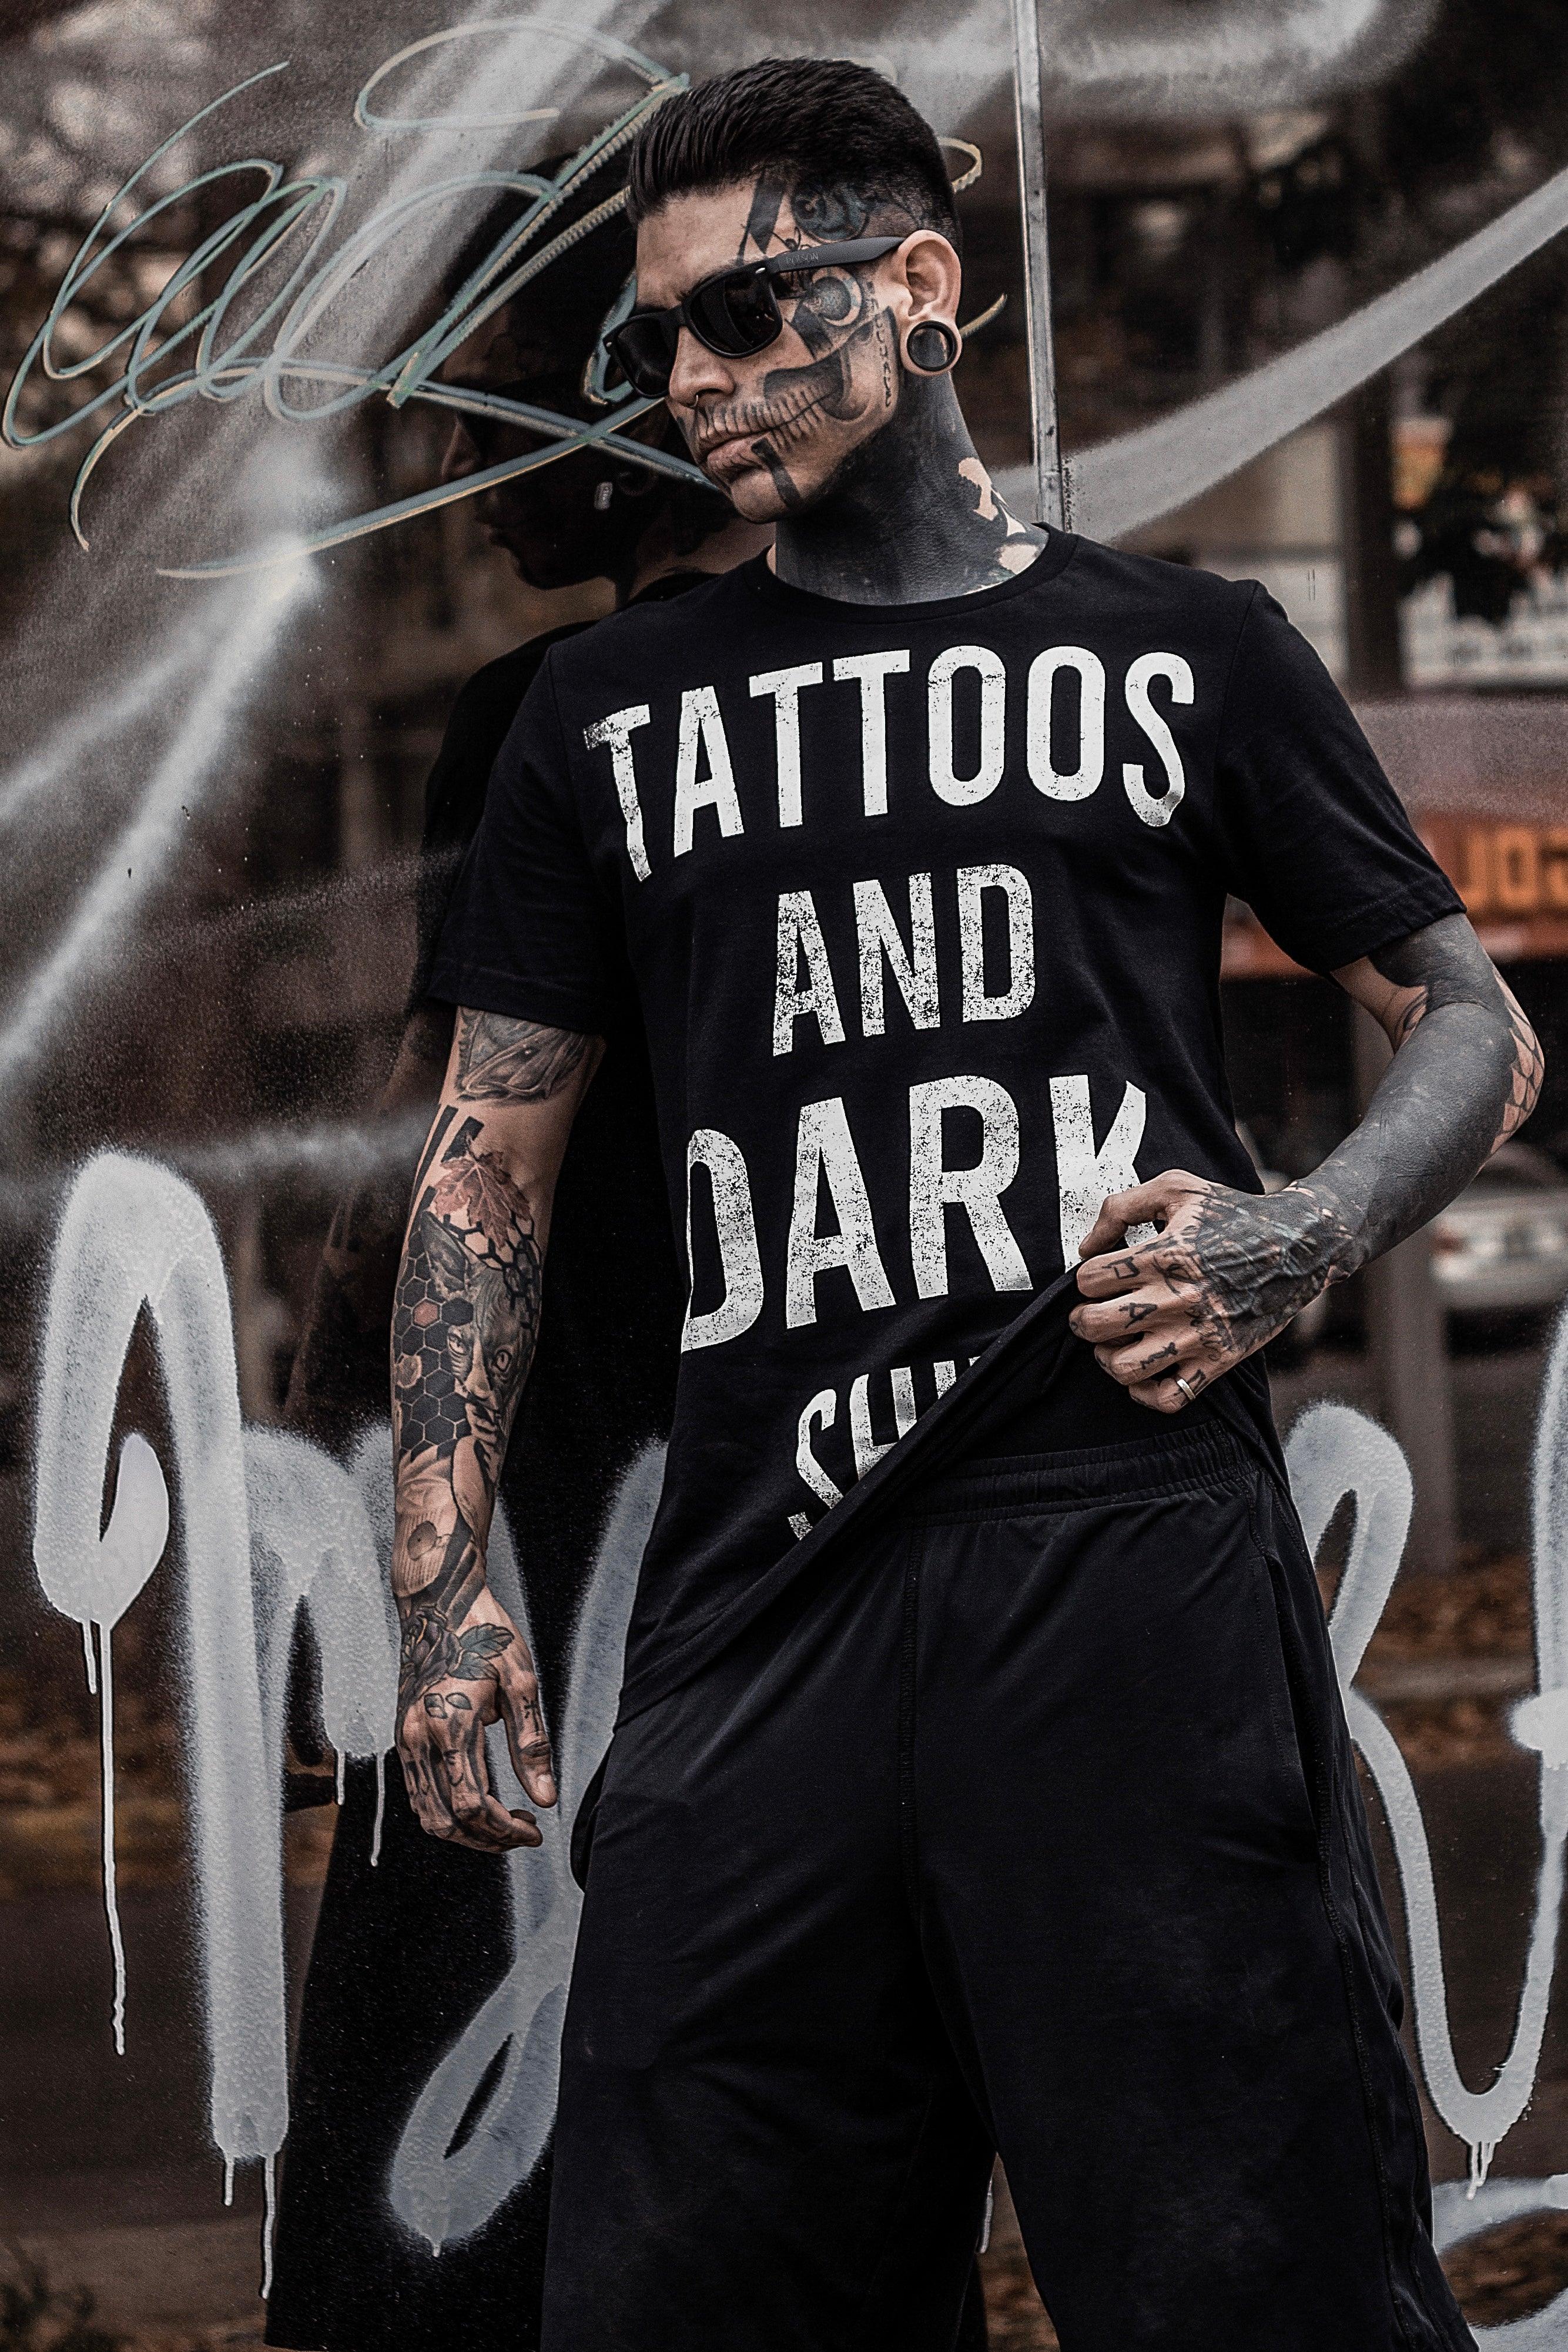 Tatuajes y mierda oscura